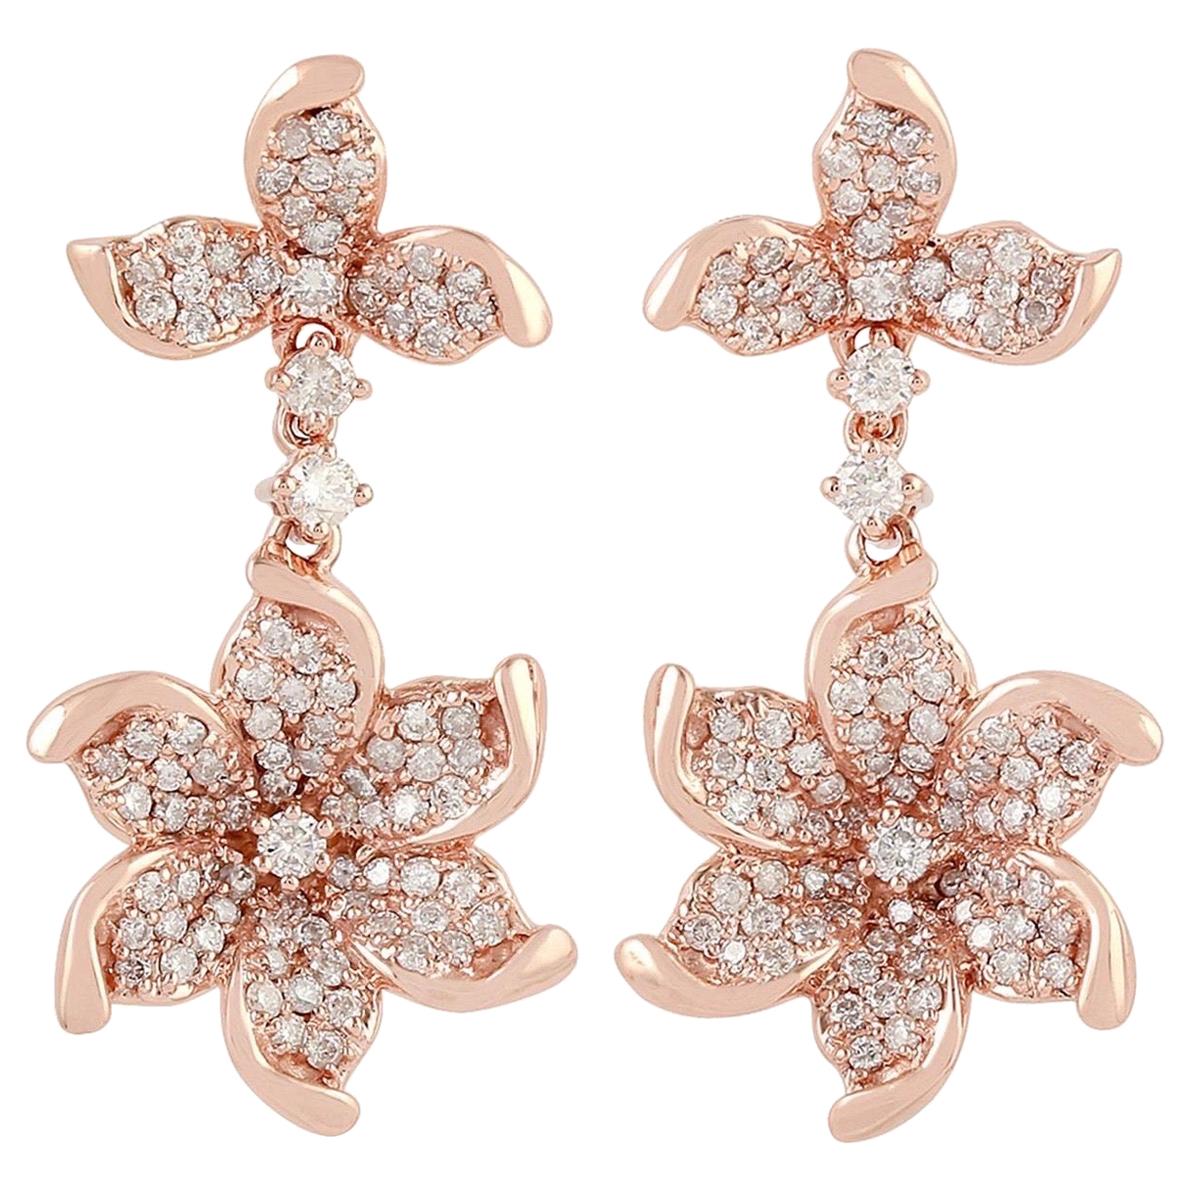 Bloom 18 Karat Gold Diamond Earrings For Sale